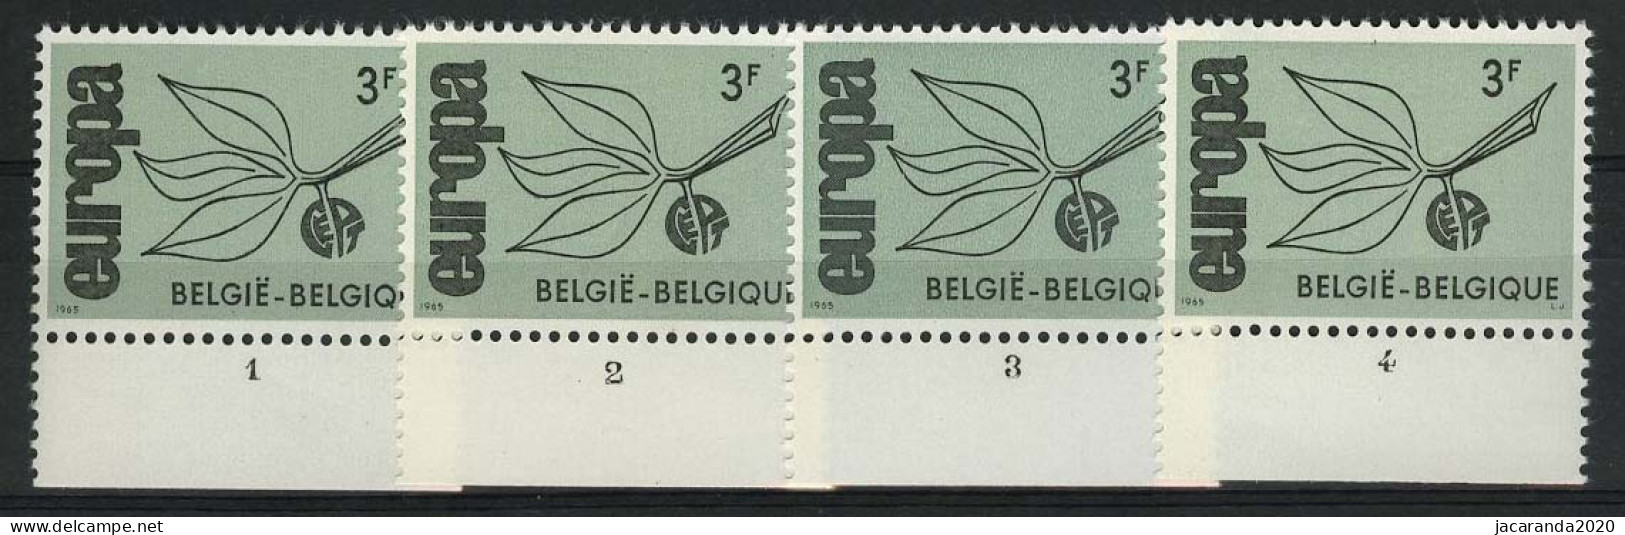 België 1343 - Europa 1965 - Plnr 1/4 - 1961-1970